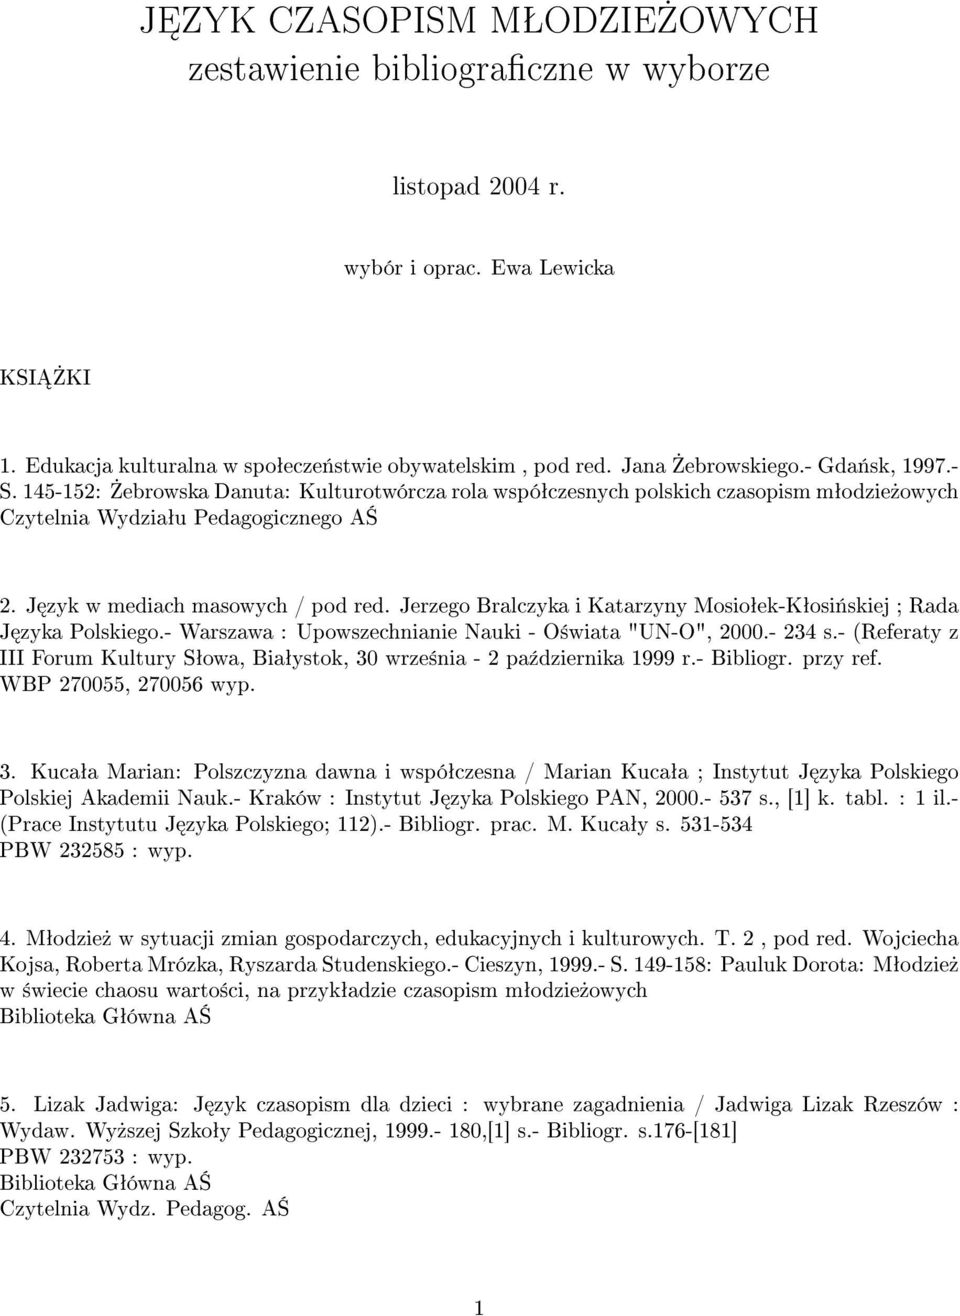 Jerzego Bralczyka i Katarzyny Mosioªek-Kªosi«skiej ; Rada J zyka Polskiego.- Warszawa : Upowszechnianie Nauki - O±wiata "UN-O", 2000.- 234 s.